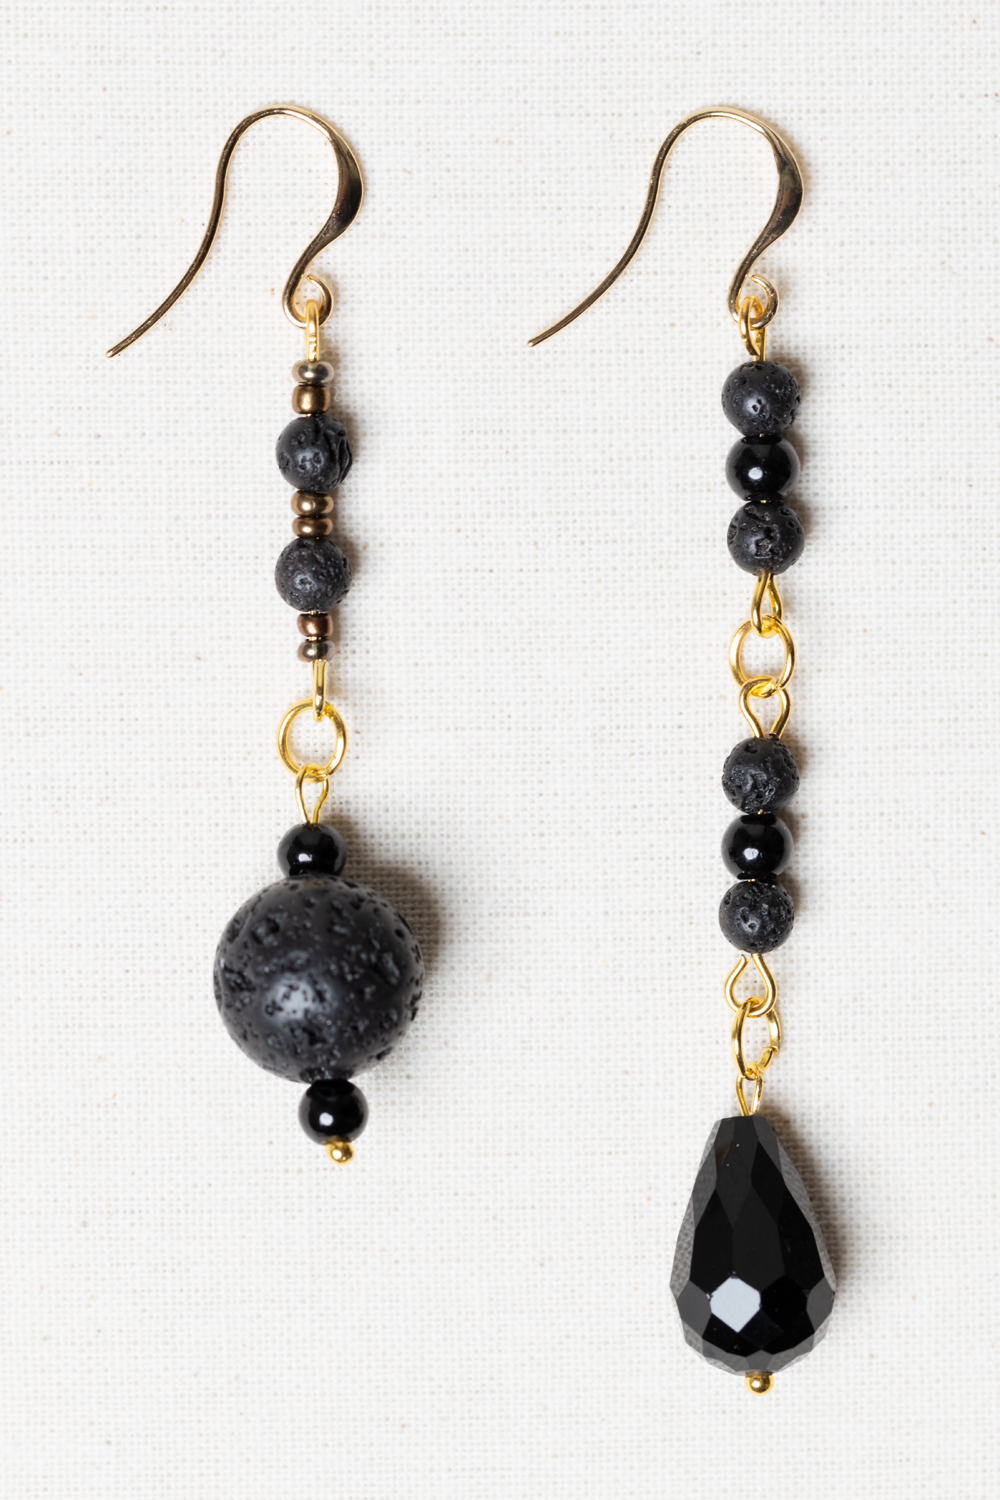 Cape Hatteras Nickel Free Earrings - handmade jewelry